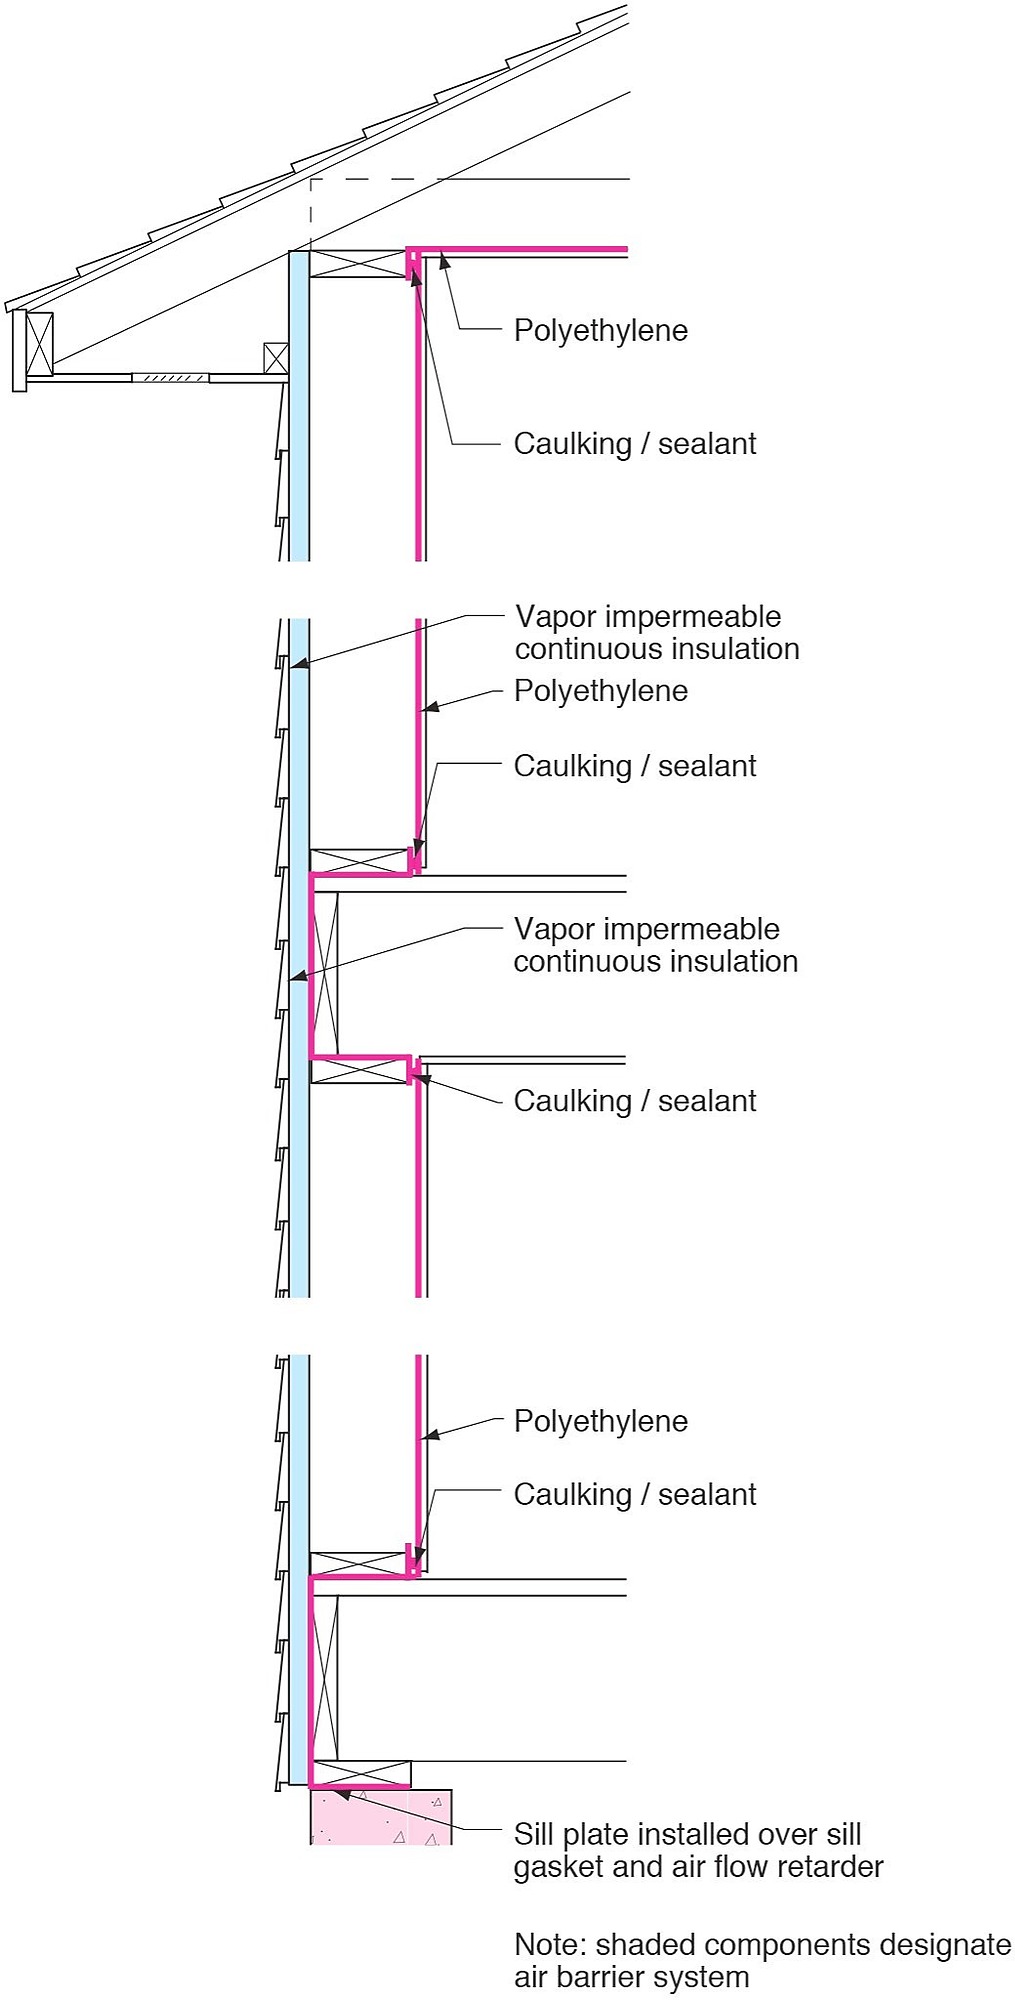 Figure 7: Poly Air/Vapor Barrier